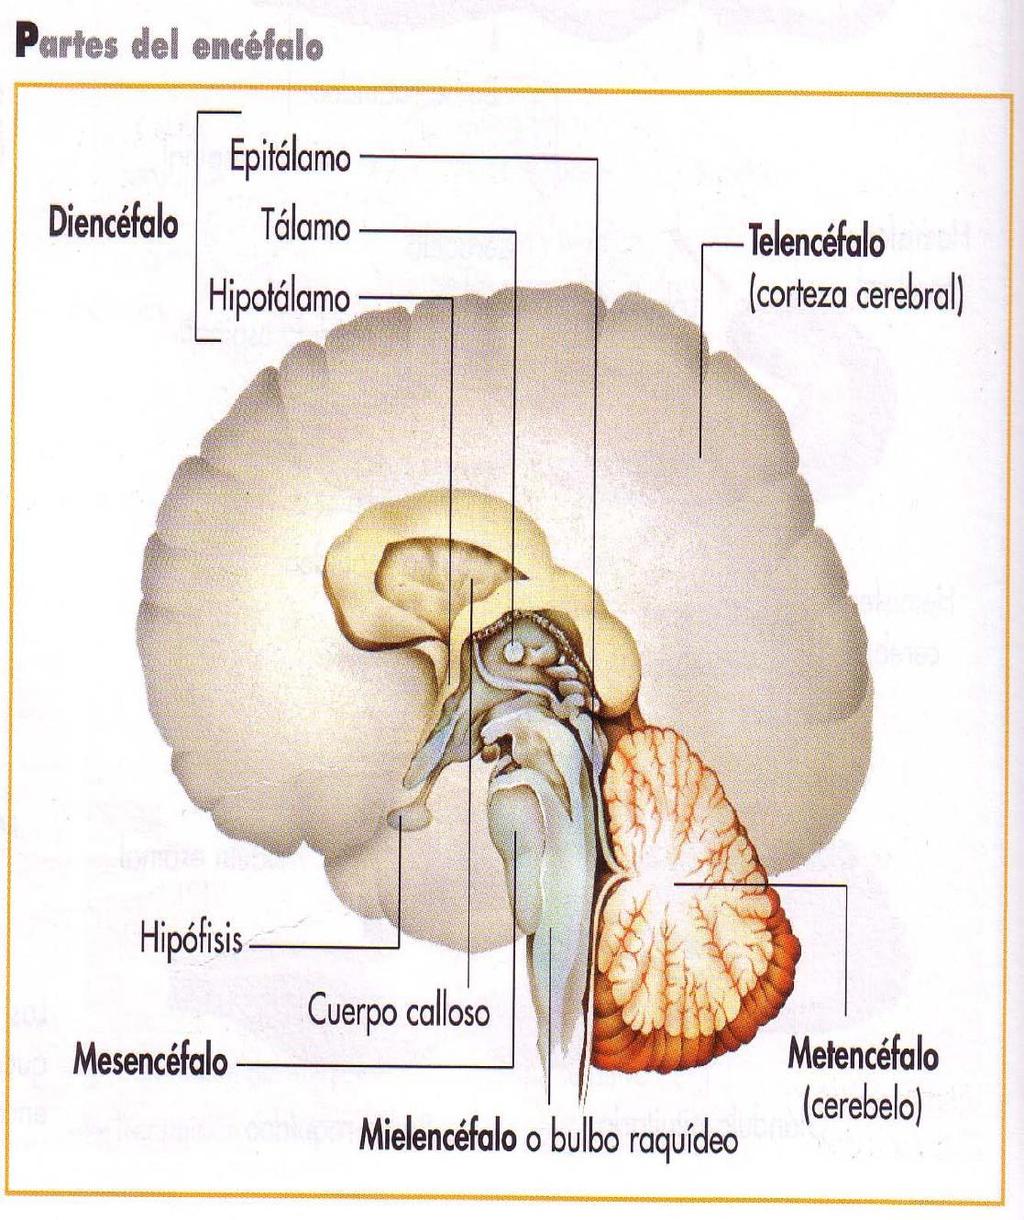 Encéfalo: Formado por: 1. Prosencéfalo 1.1. Telencéfalo (cerebro) Dos hemisferios conectados por el cuerpo calloso 1.2. Diencéfalo (epitálamo, tálamo, hipotálamo) 2.